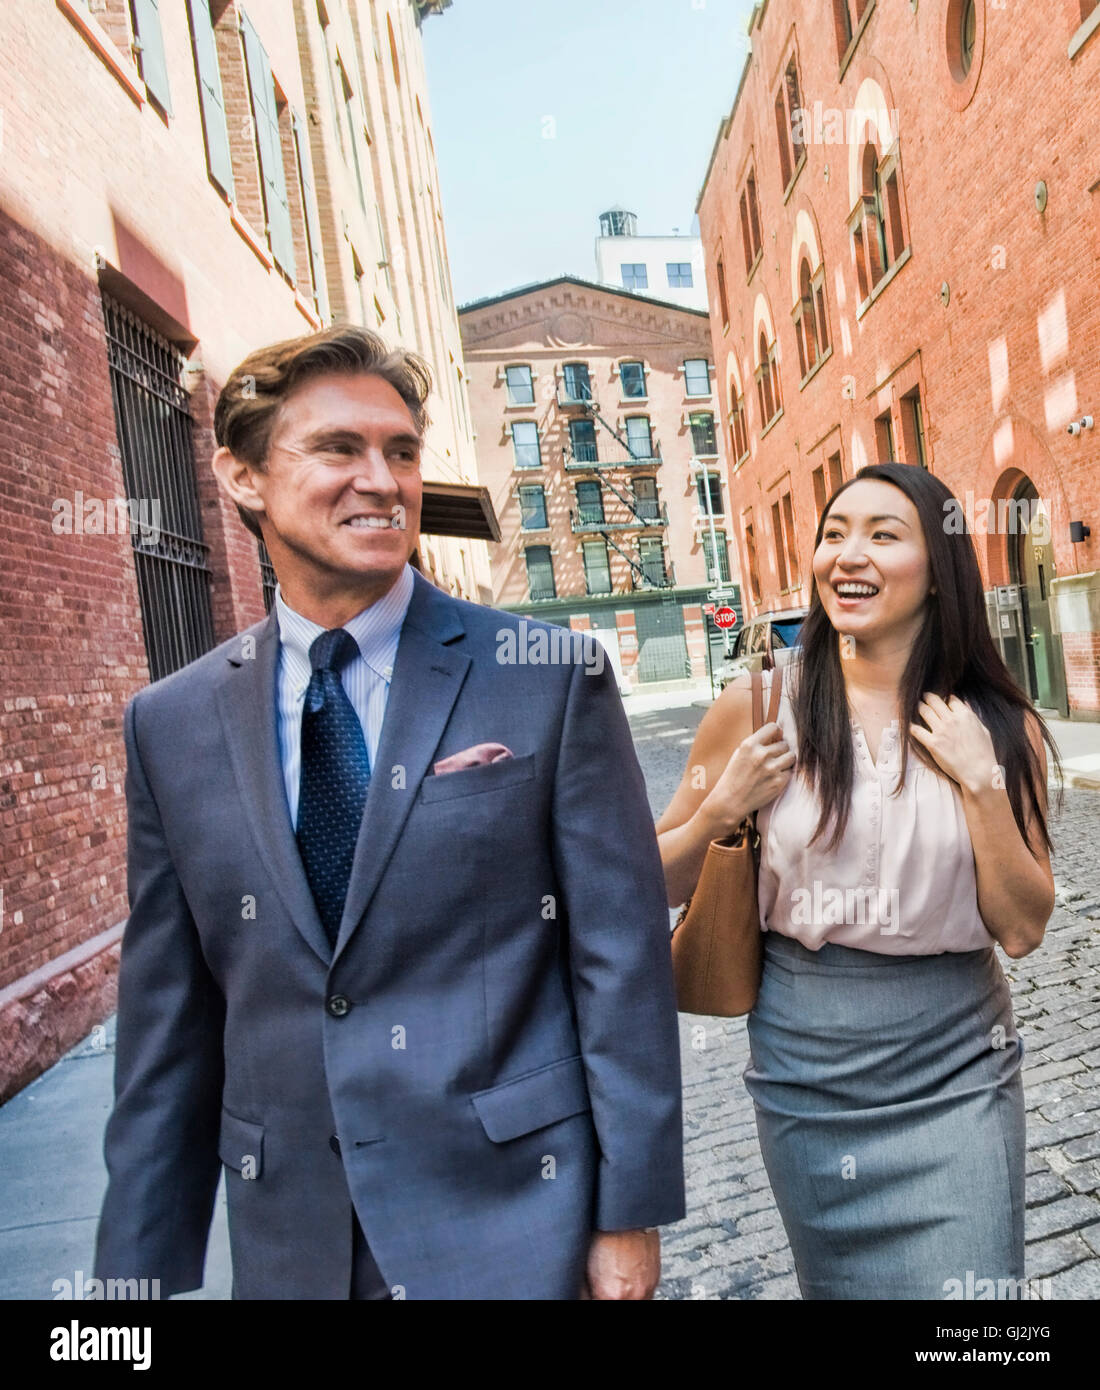 Geschäftsmann und Frau zu Fuß zusammen, in der Straße, Lächeln Stockfoto